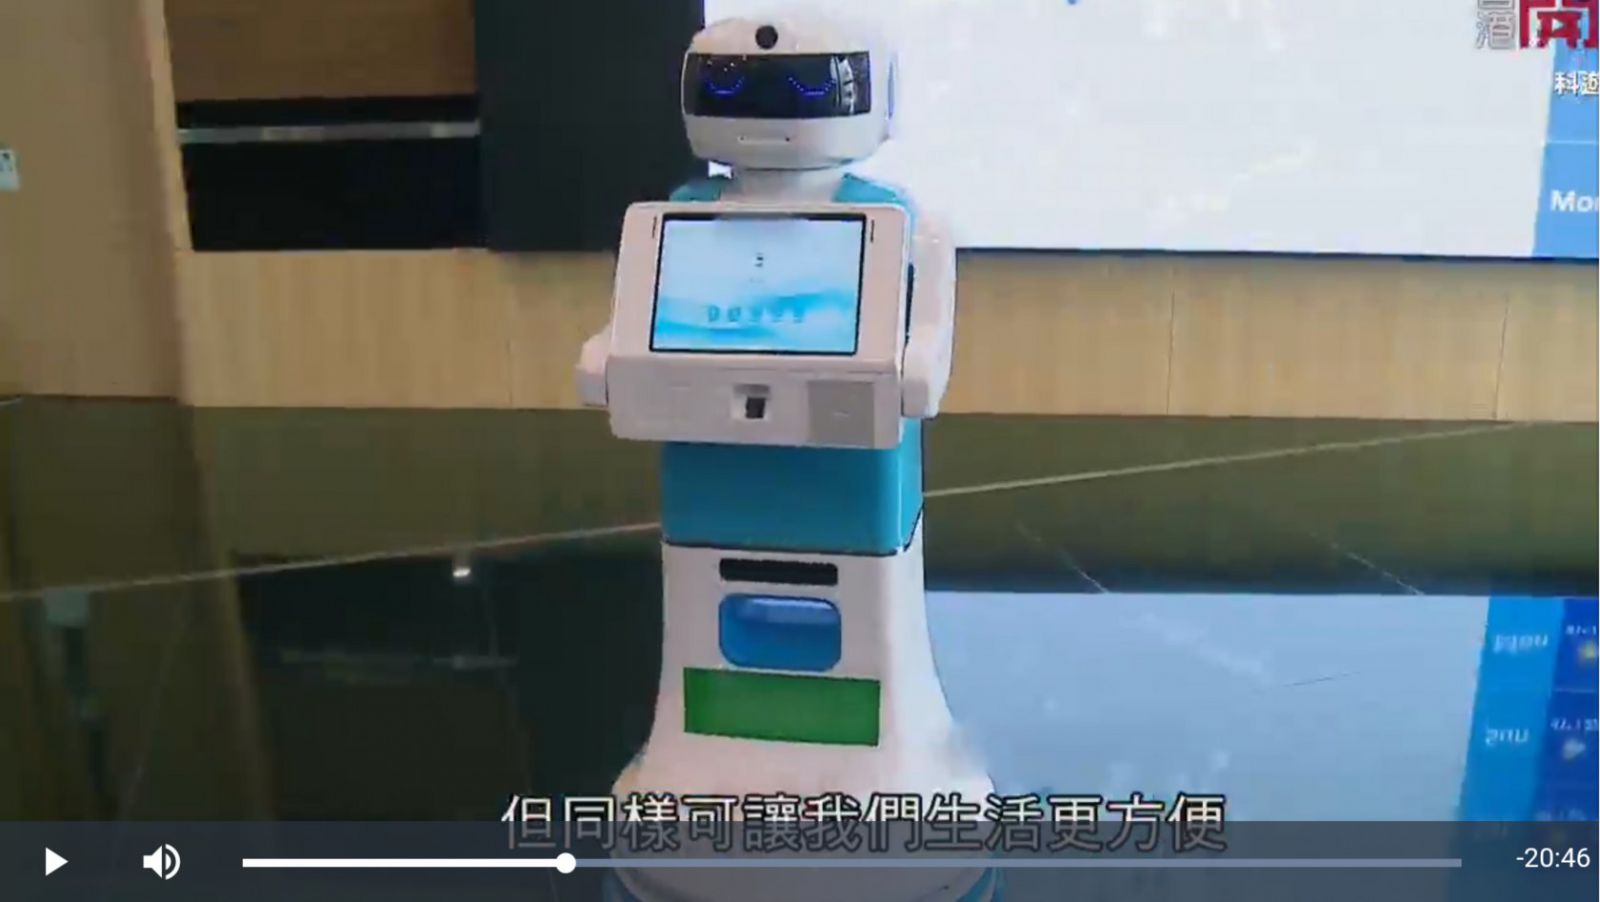 Guardforce’s concierge robot in open tv